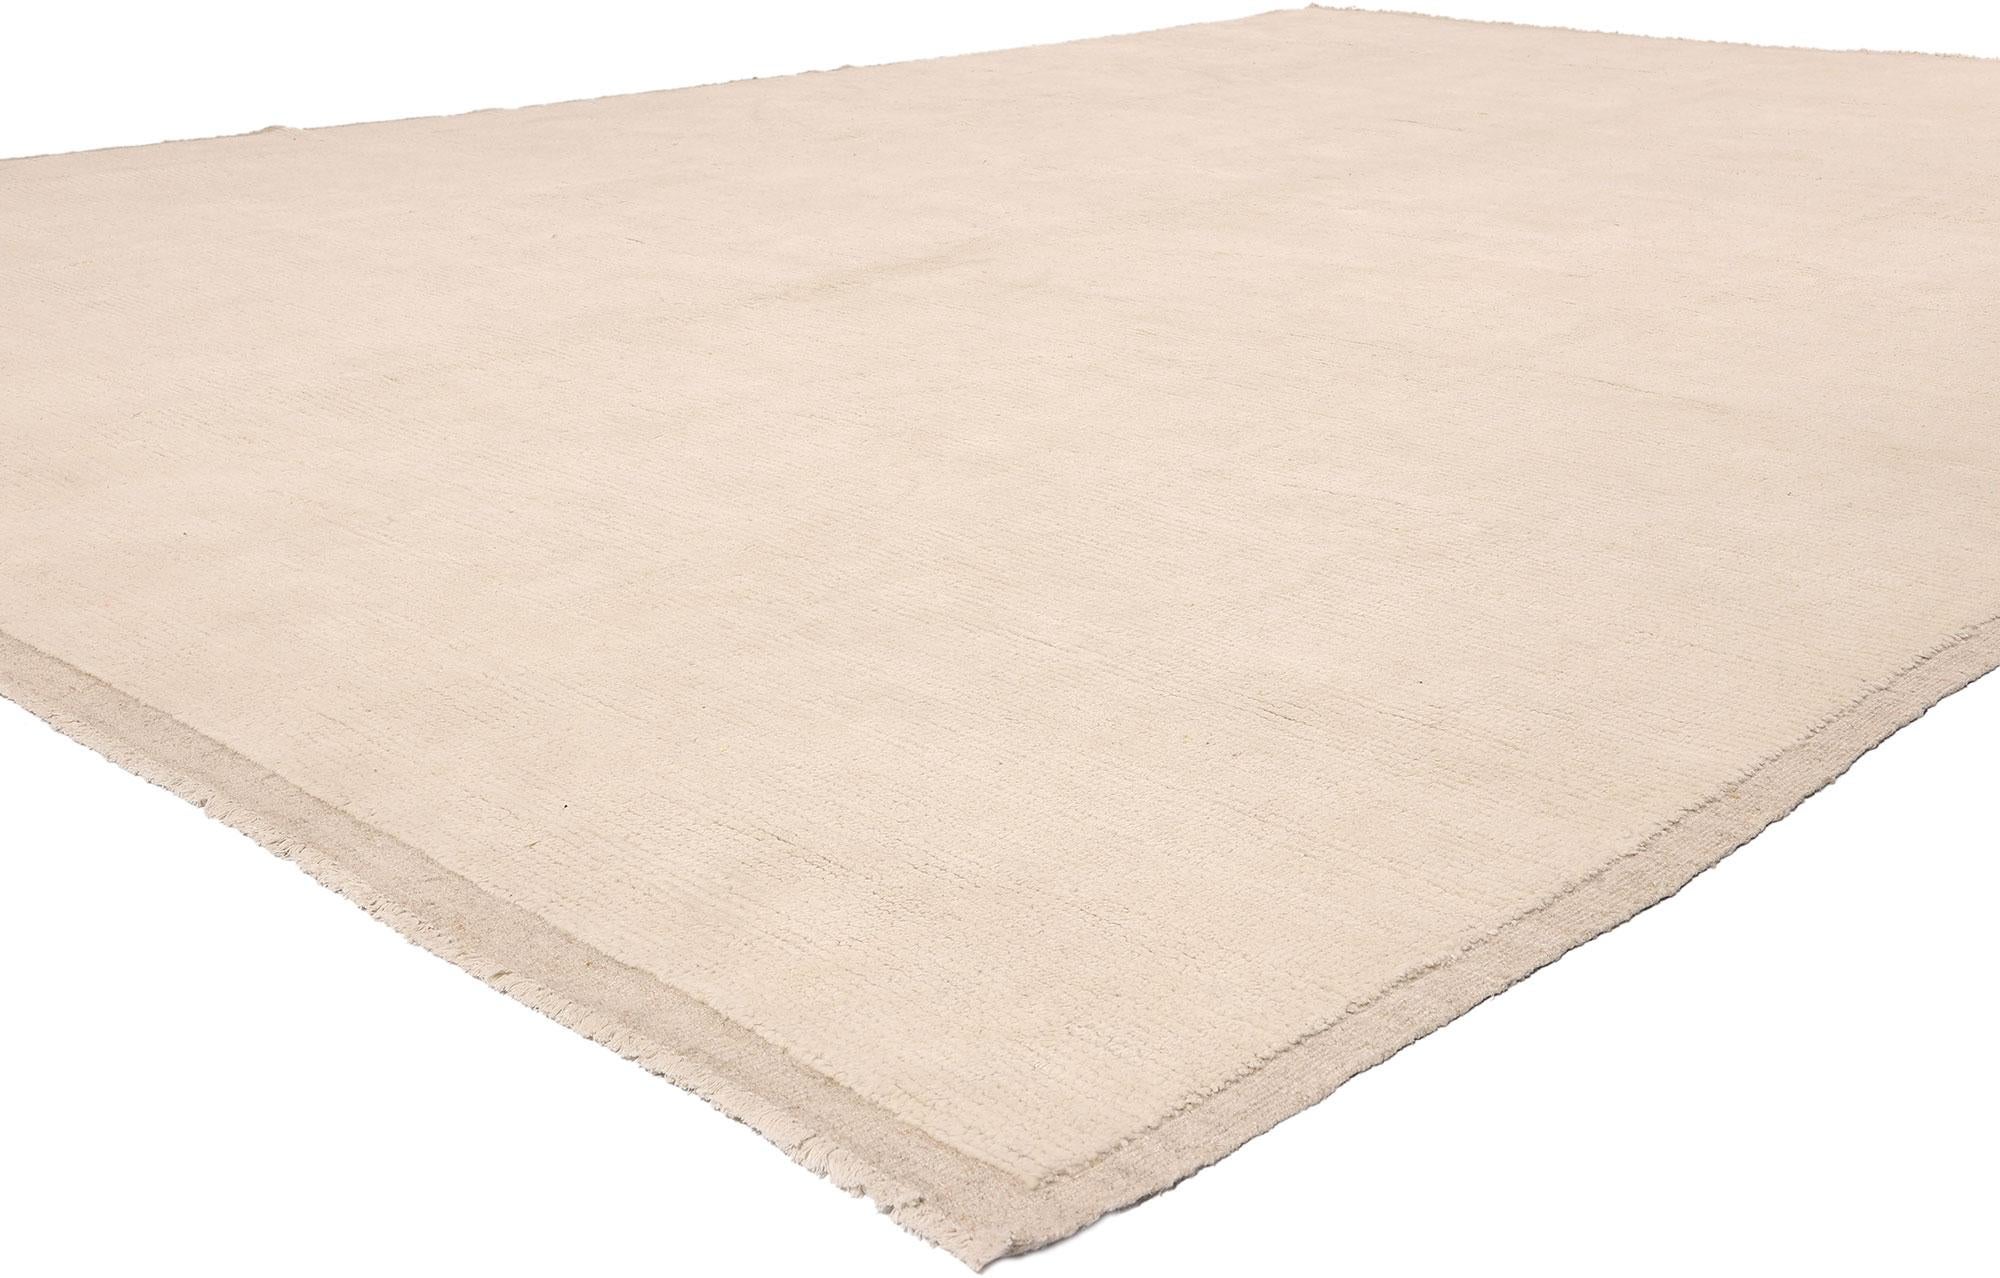 81067 Moderner marokkanischer, minimalistischer Teppich, 09'08 x 13'08. Unser exquisiter marokkanischer Teppich aus handgeknüpfter Wolle, der mit größter Sorgfalt und Liebe zum Detail gefertigt wurde, verkörpert eine faszinierende Verschmelzung von